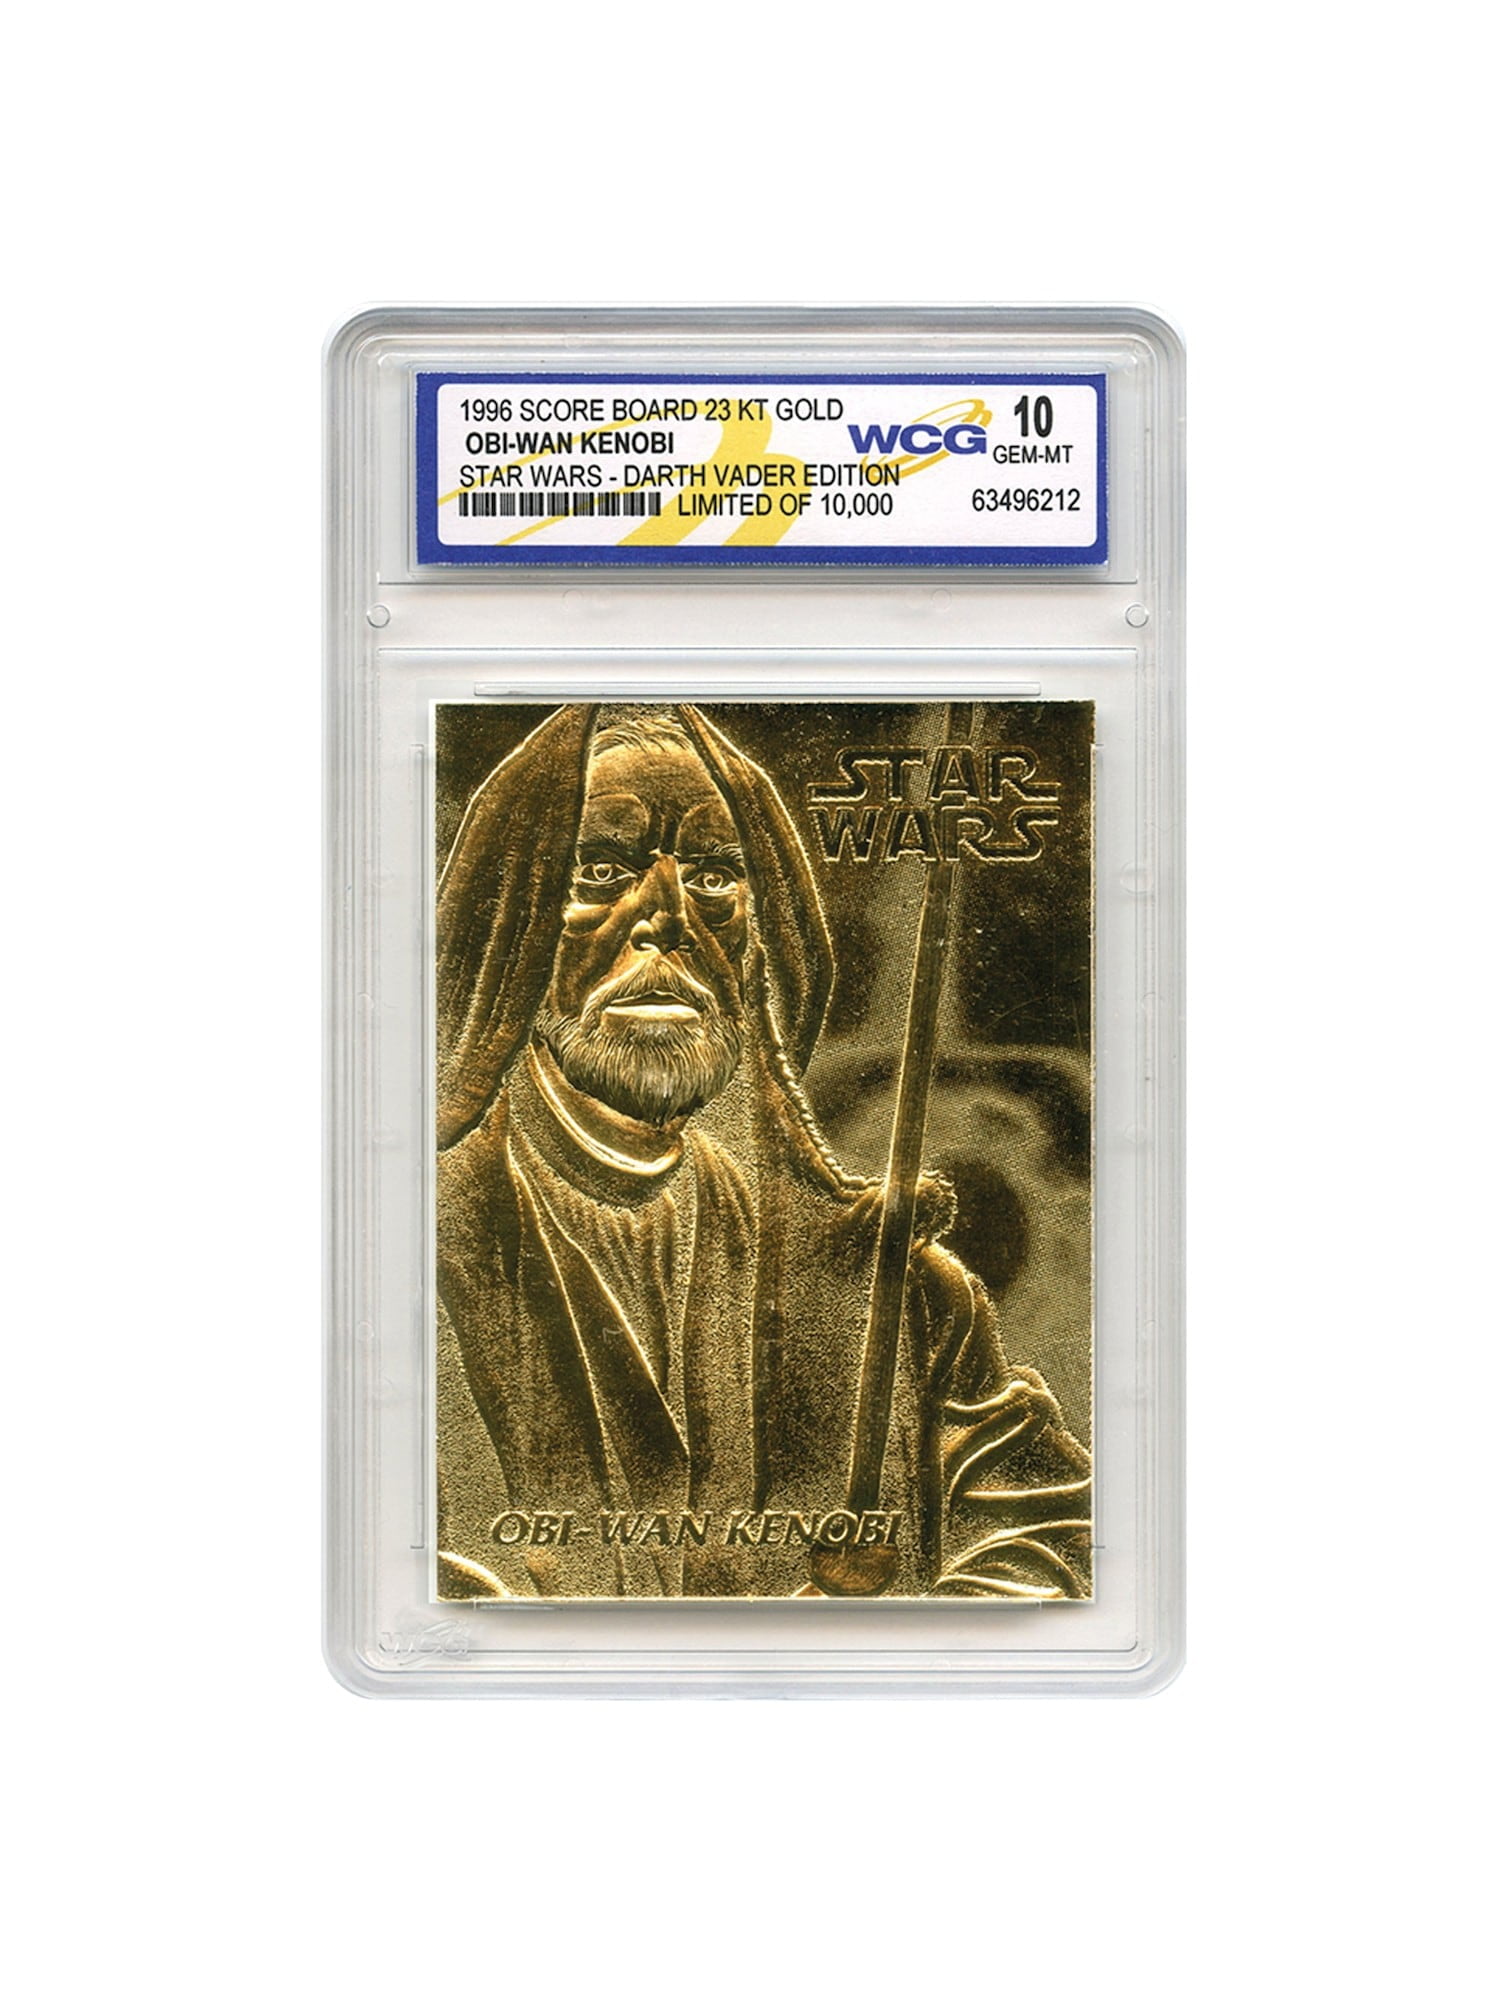 STAR WARS Set of 9 Official 23K Gold Cards Graded Gem-Mint 10 DARTH VADER SERIES 